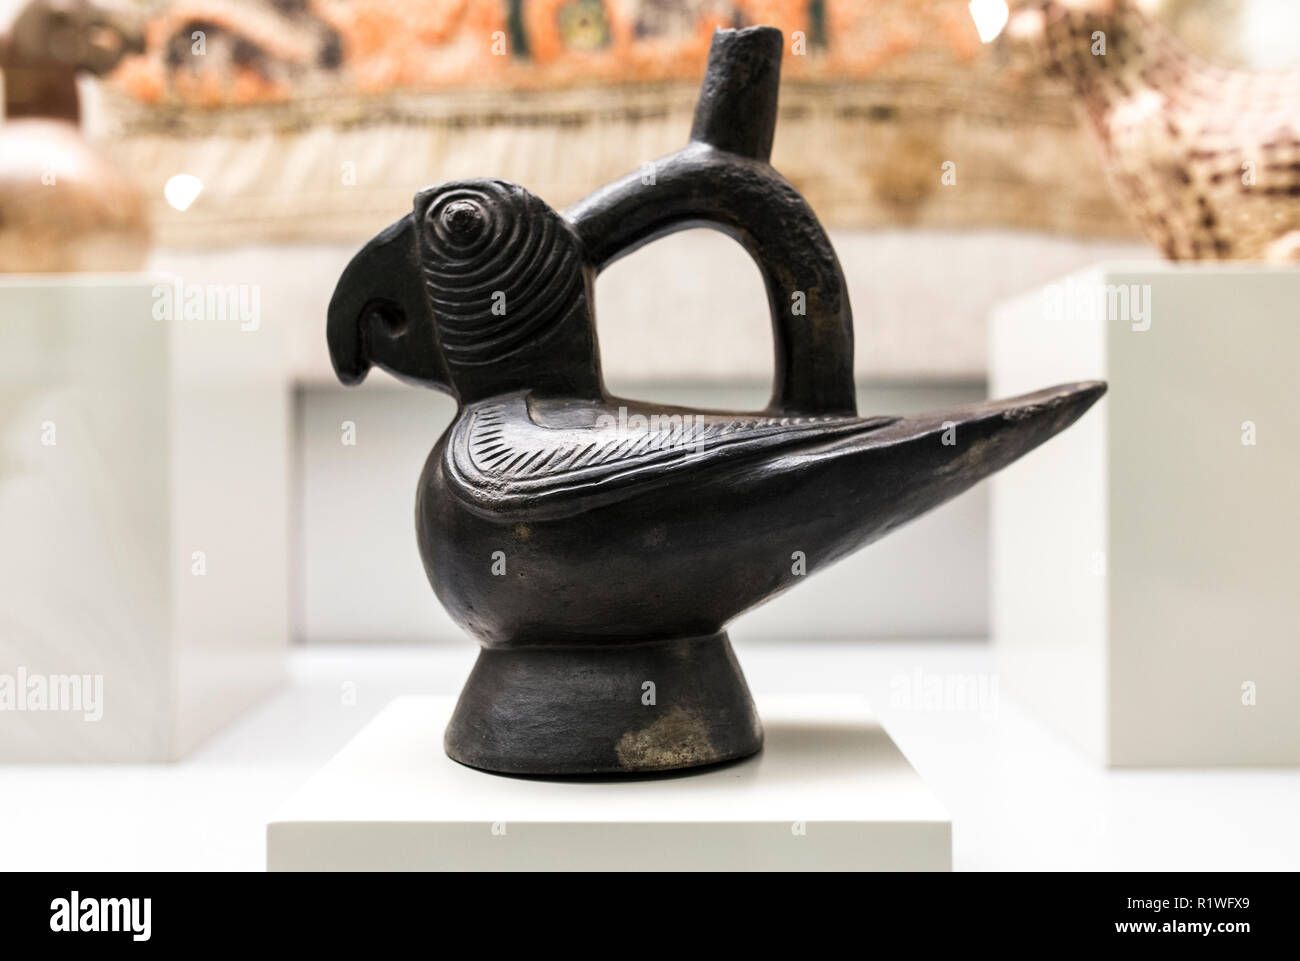 Madrid, España - El 8 de septiembre, 2018: buque escultórica representando el loro de la cultura Moche, antiguo Perú.Museo de América, Madrid, España Foto de stock